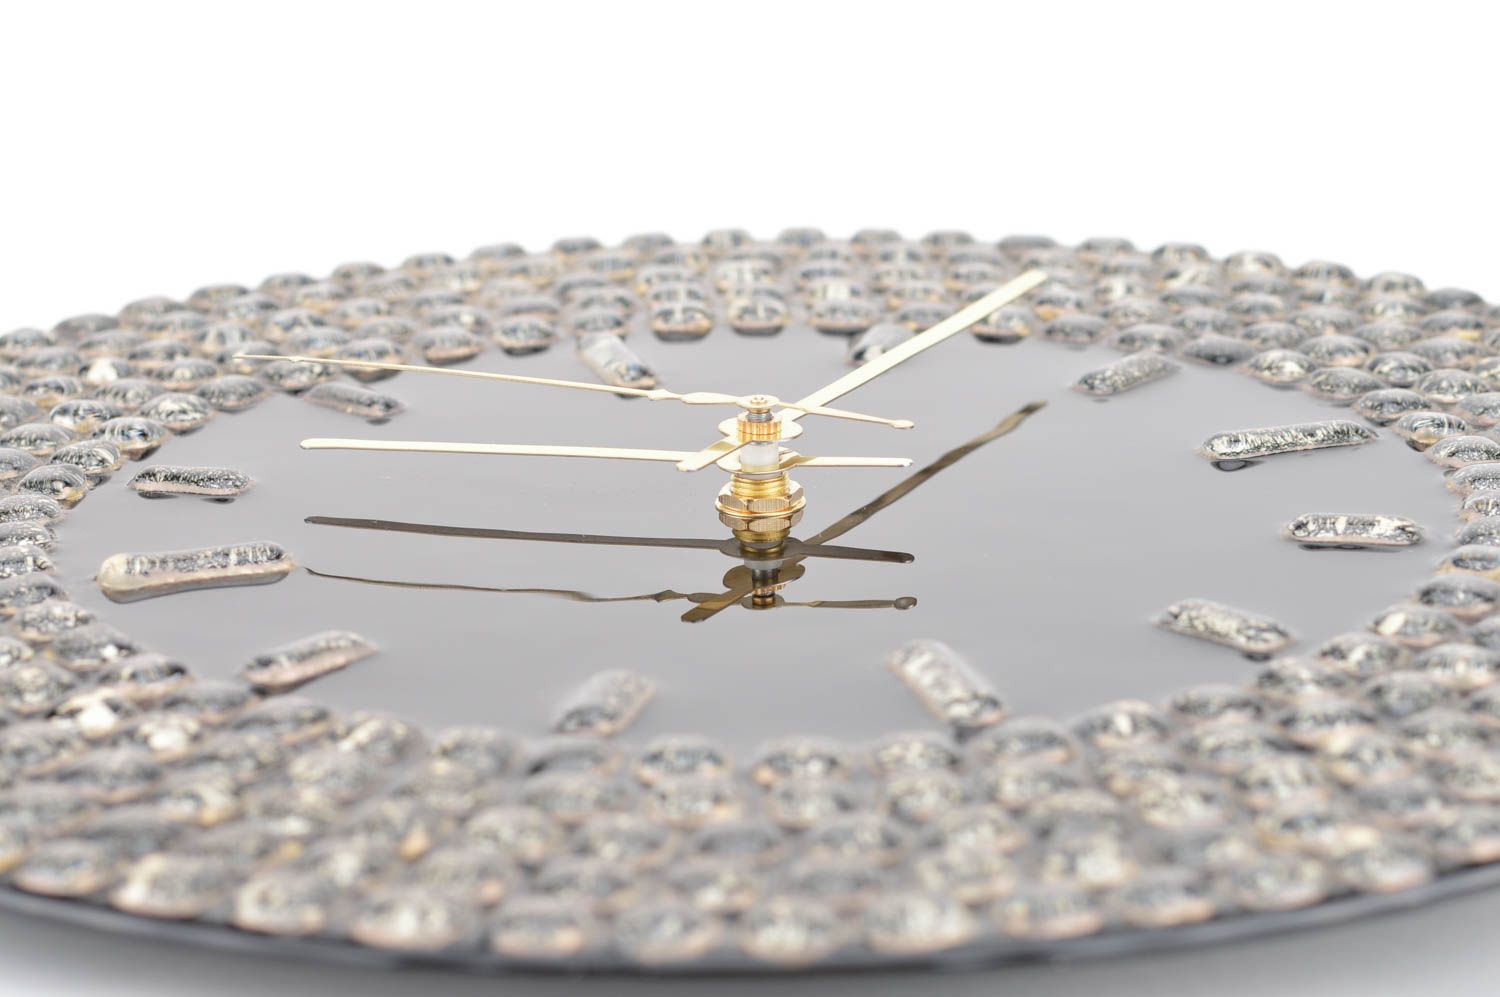 Настенные часы ручной работы из стекла в технике фьюзинг круглые для декора фото 5